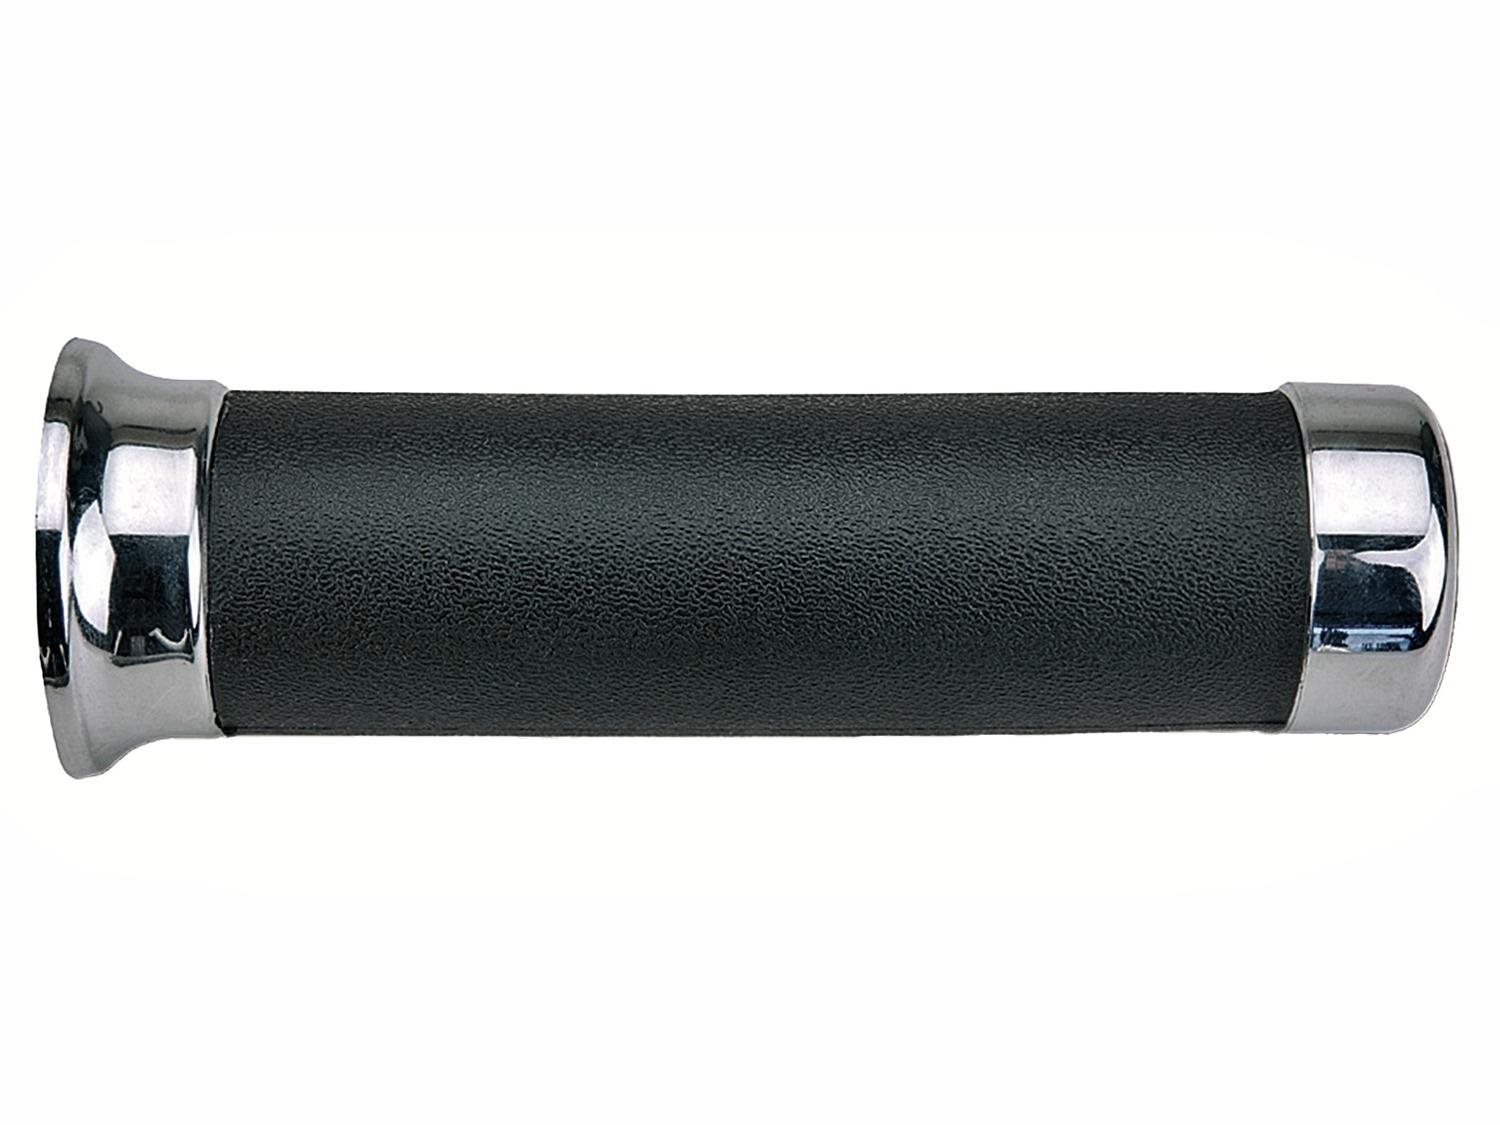 Domino gripy custom délka 145 mm, černé